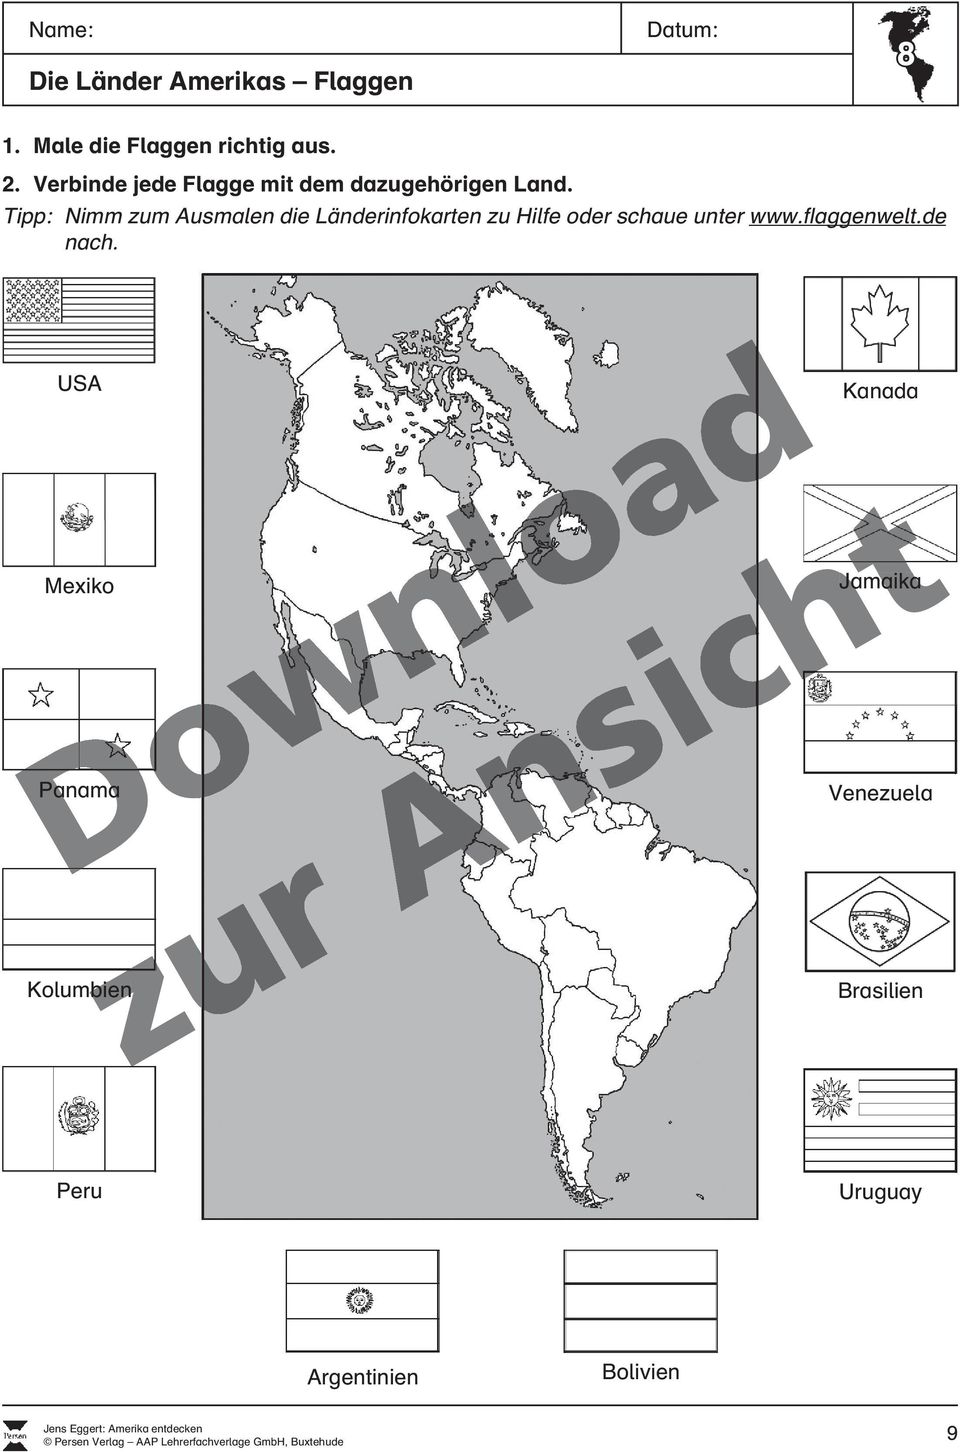 Tipp: Nimm zum Ausmalen die Länderinfokarten zu Hilfe oder schaue unter www.flaggenwelt.de nach.